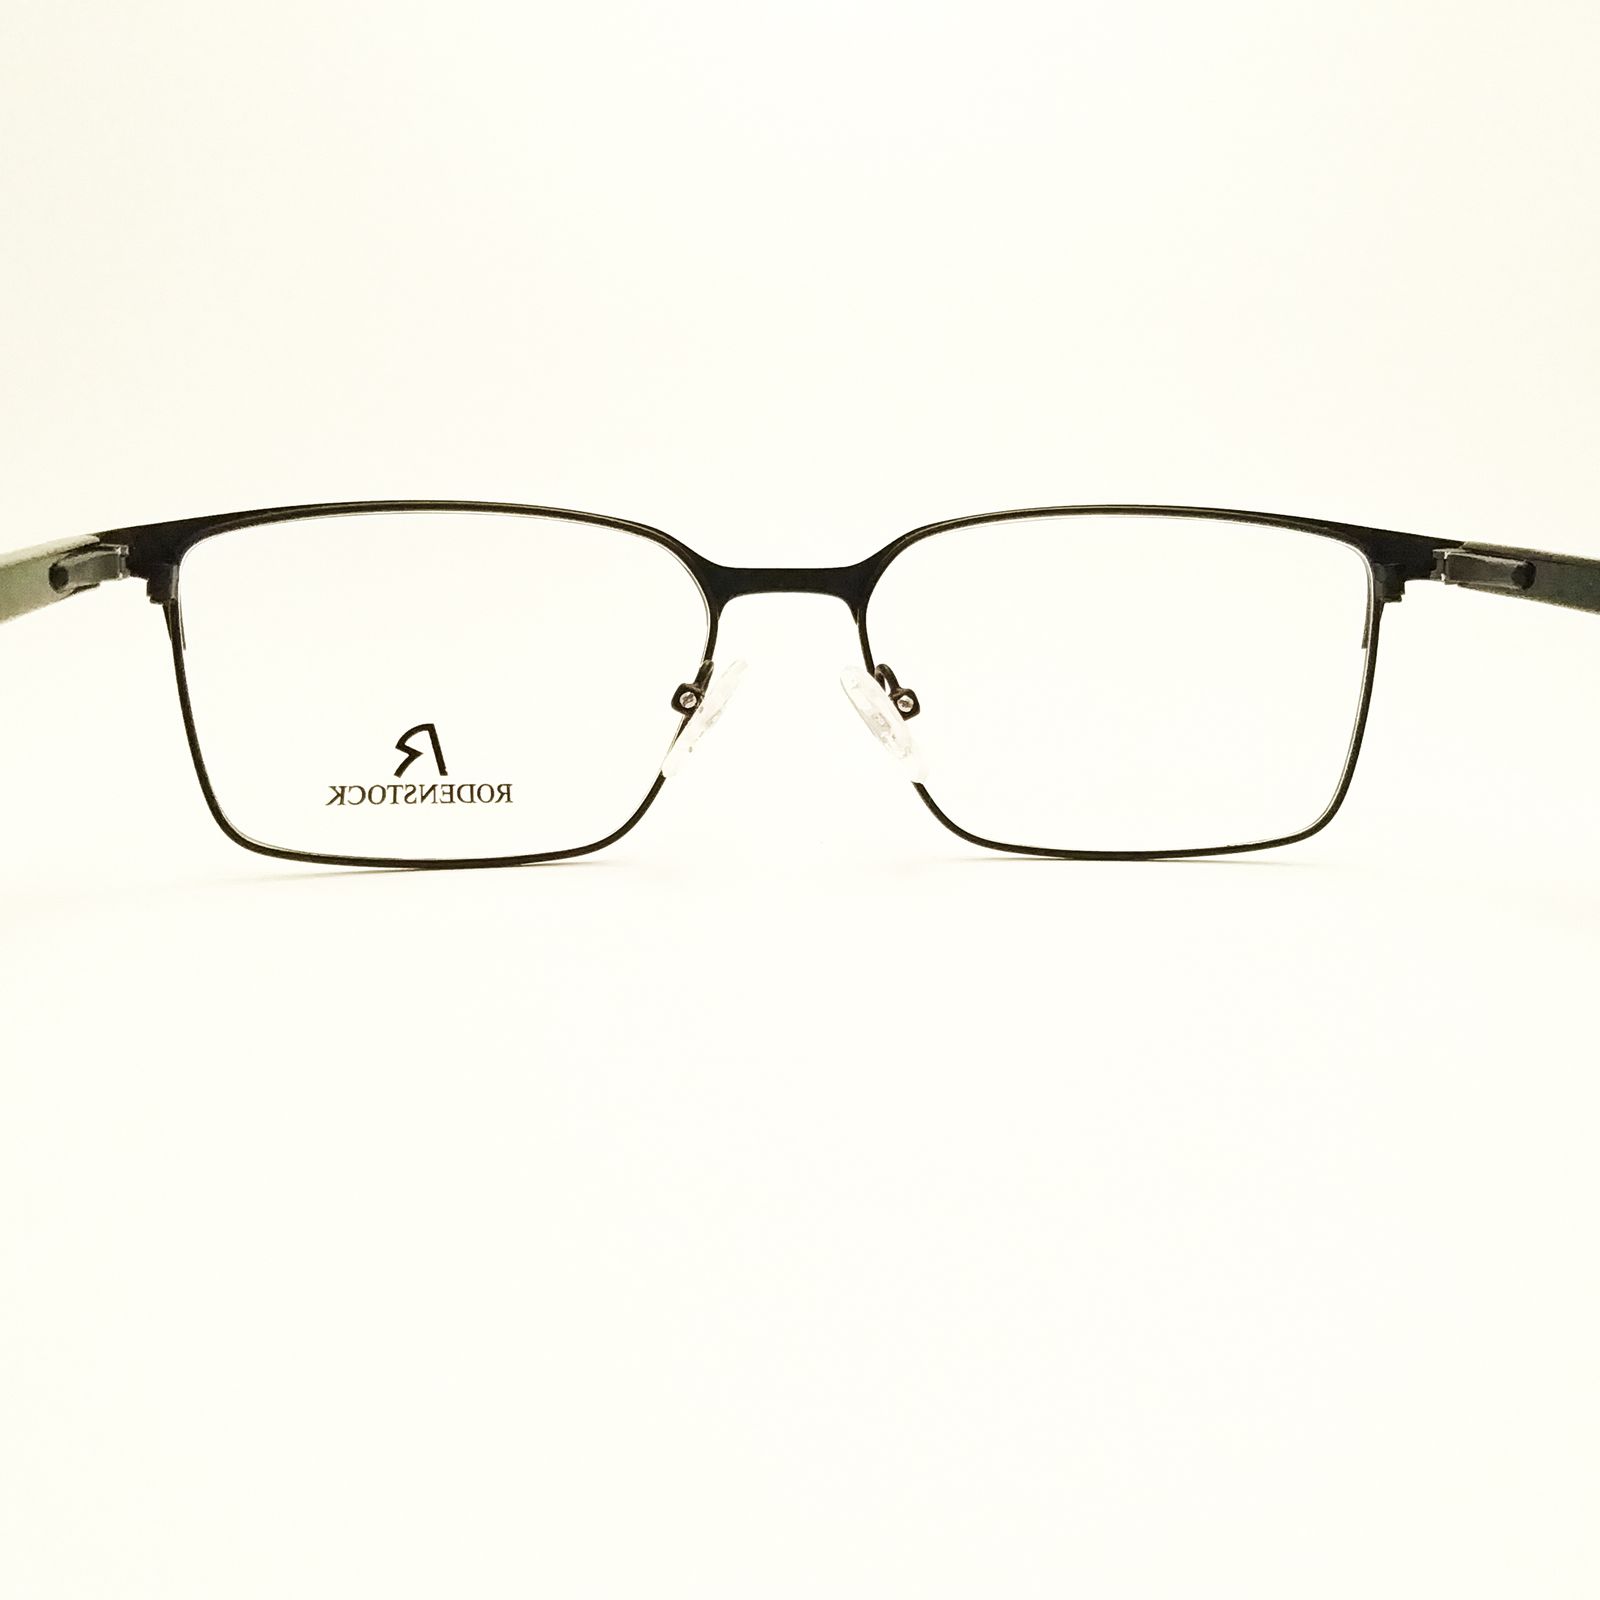 فریم عینک طبی بچگانه رودن اشتوک مدل 2045 -  - 7